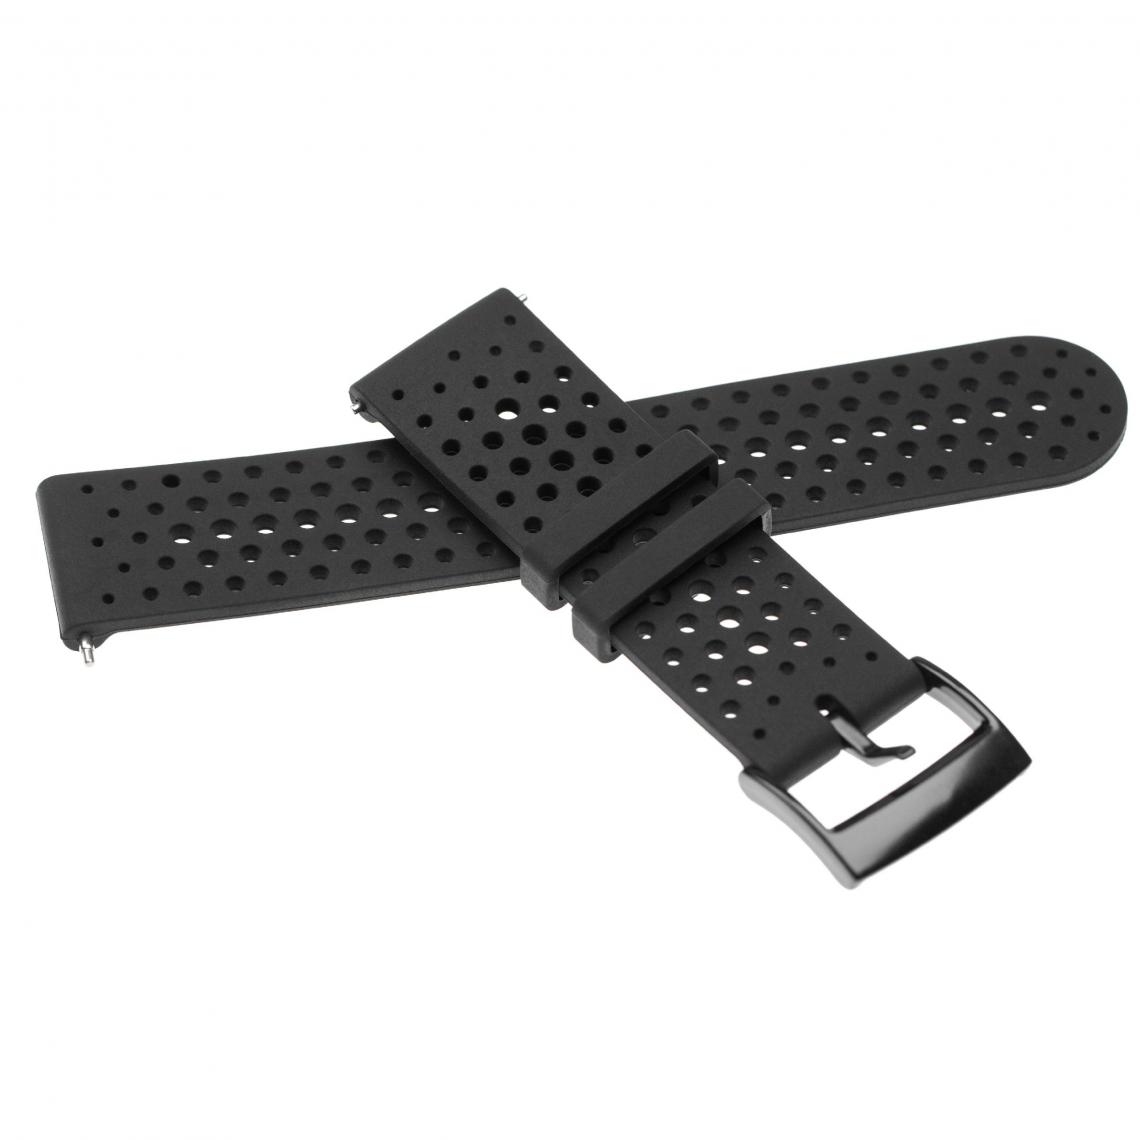 Vhbw - vhbw bracelet compatible avec Suunto 9 Baro, Spartan Sport, Spartan Sport Wrist HR montre connectée - 13,4 + 9,5 cm silicone noir - Accessoires montres connectées